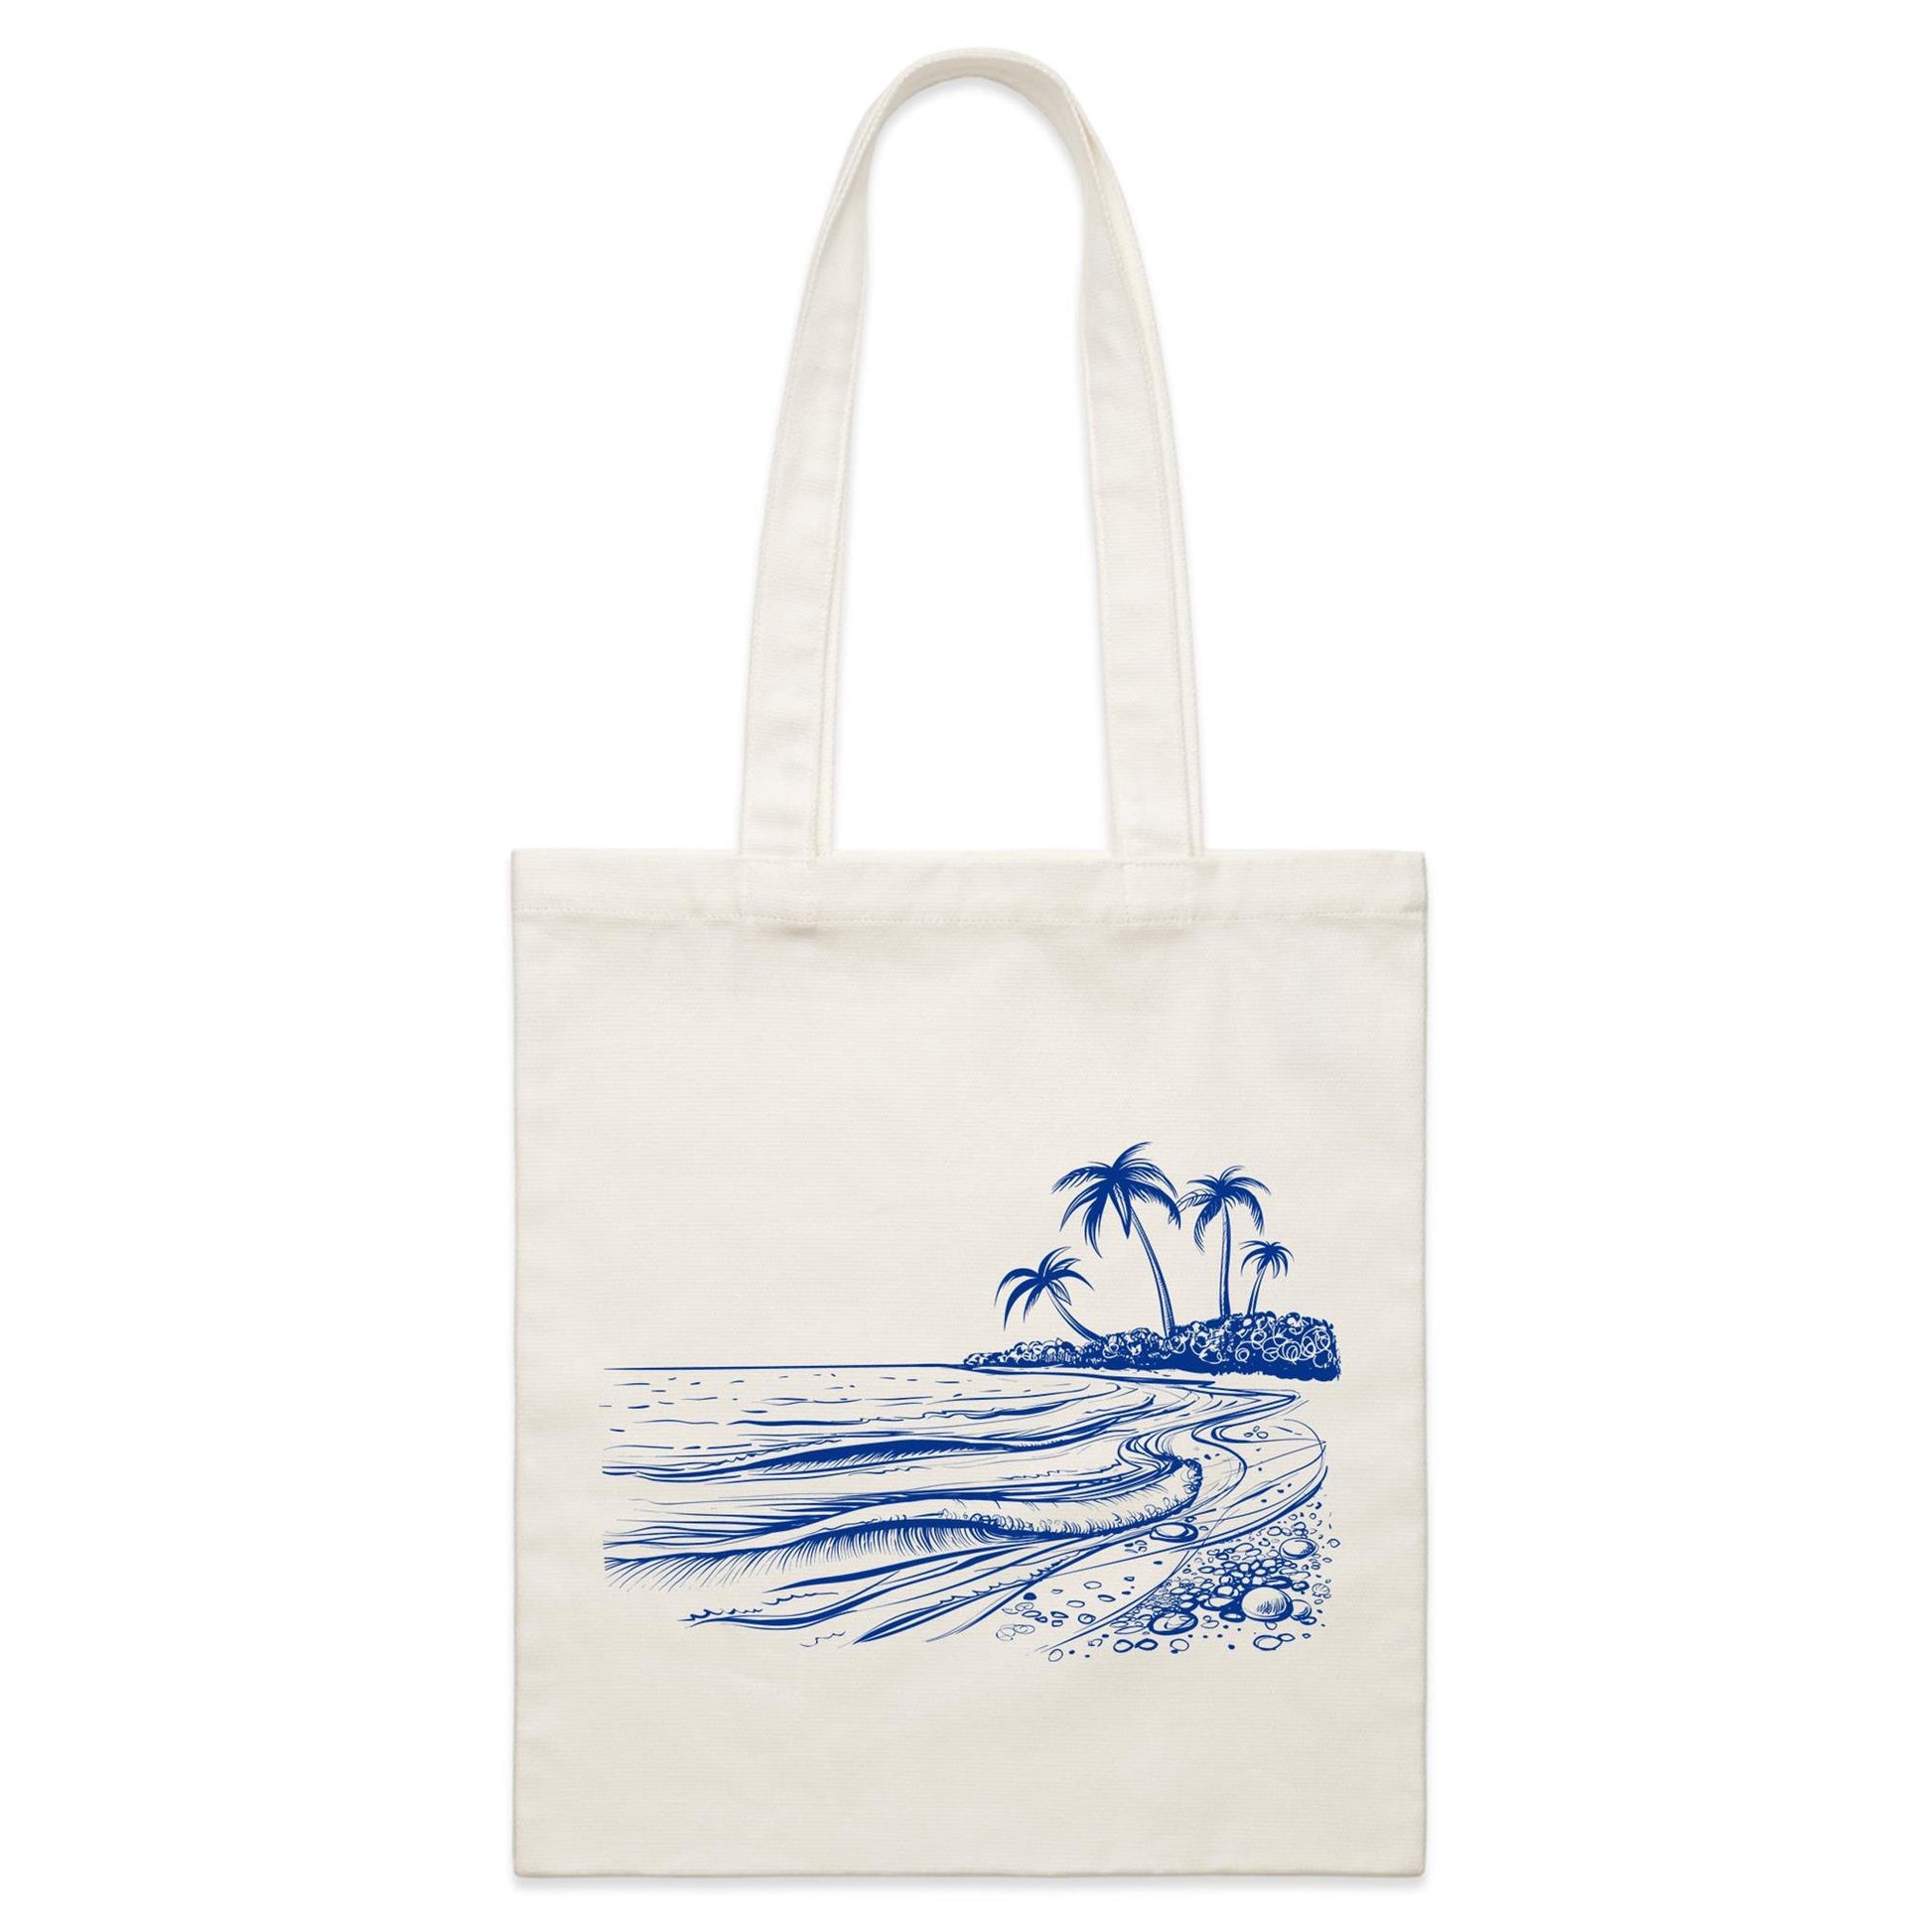 Surf Beach - Parcel Canvas Tote Bag Default Title Parcel Tote Bag Summer Surf